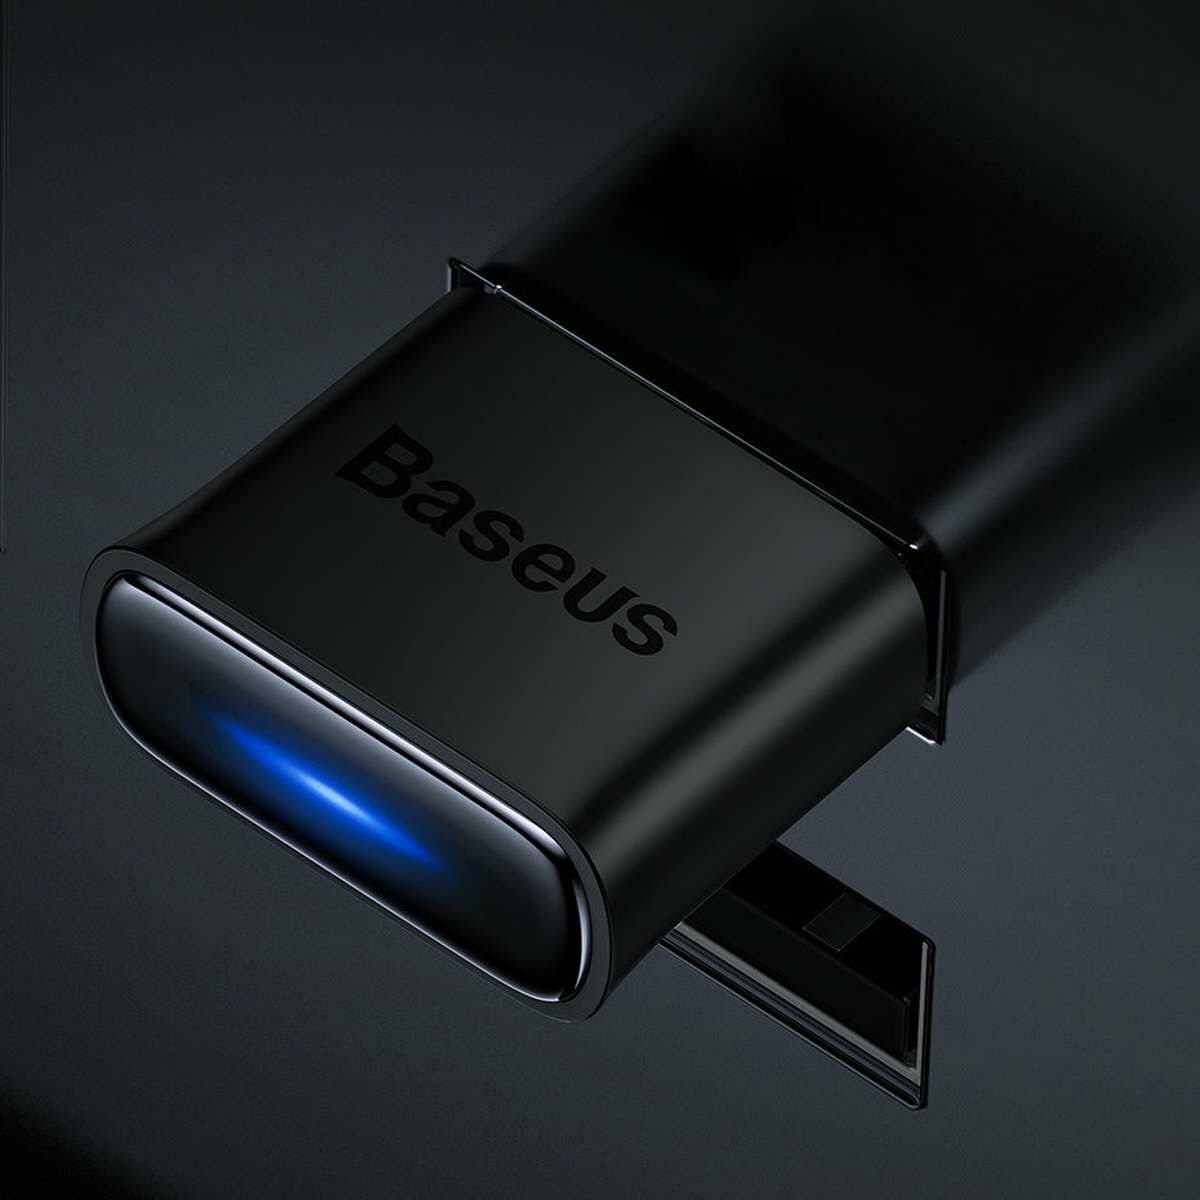 Kép 14/20 - Baseus HUB BA04 mini Bluetooth 5.0 adapter USB számítógépes vevőegység és transmitter, fekete (ZJBA000001)